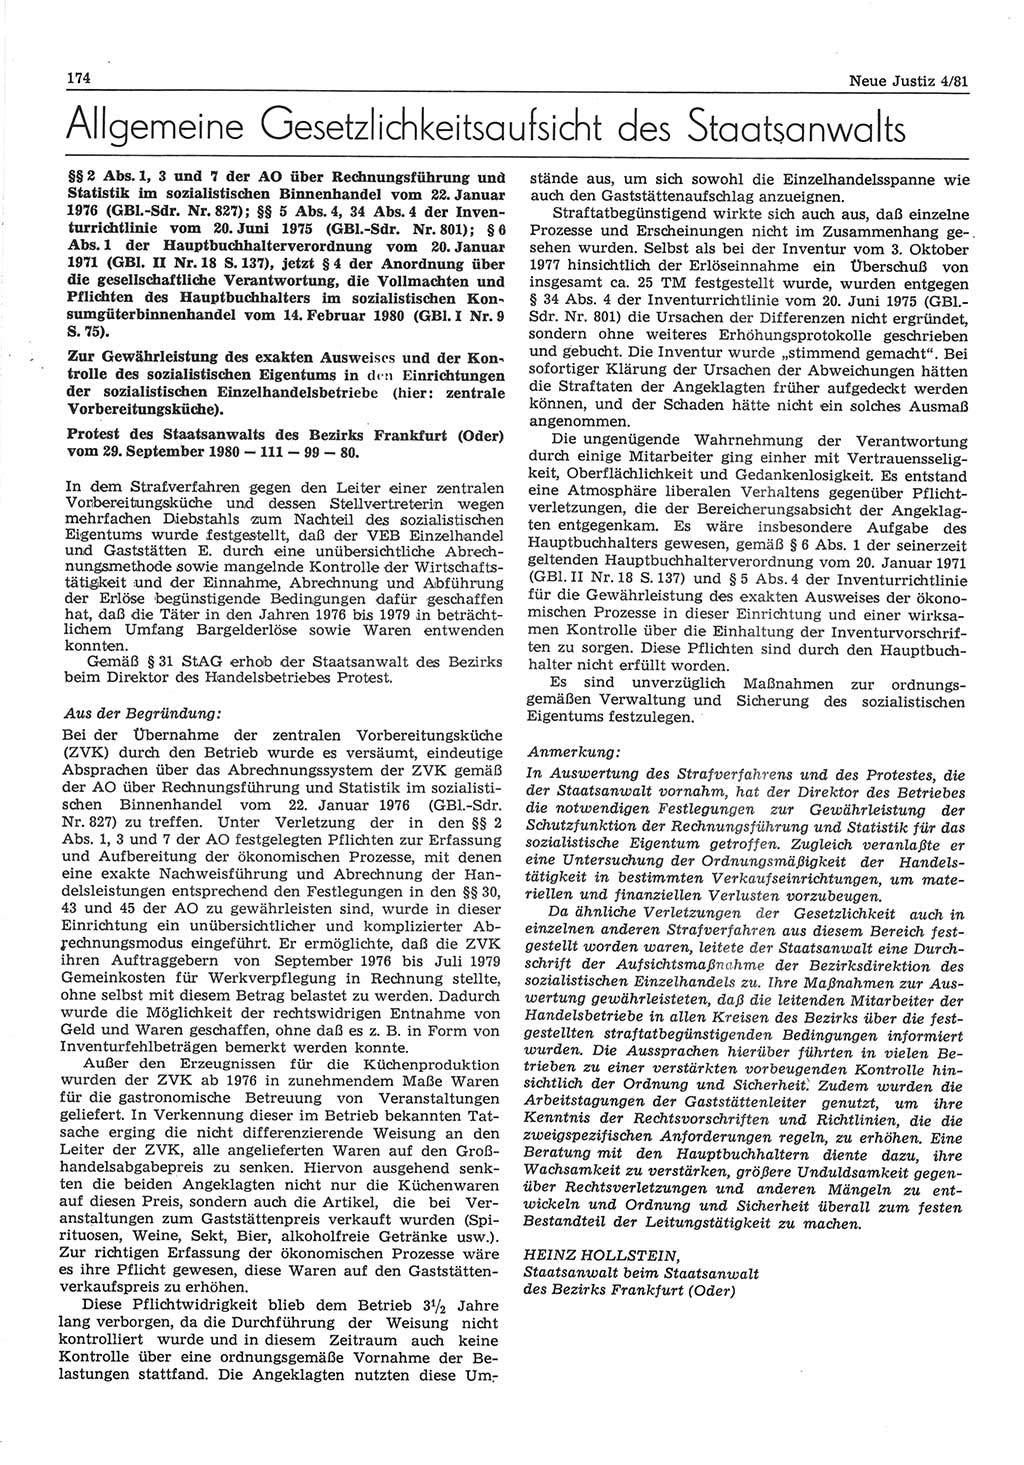 Neue Justiz (NJ), Zeitschrift für sozialistisches Recht und Gesetzlichkeit [Deutsche Demokratische Republik (DDR)], 35. Jahrgang 1981, Seite 174 (NJ DDR 1981, S. 174)